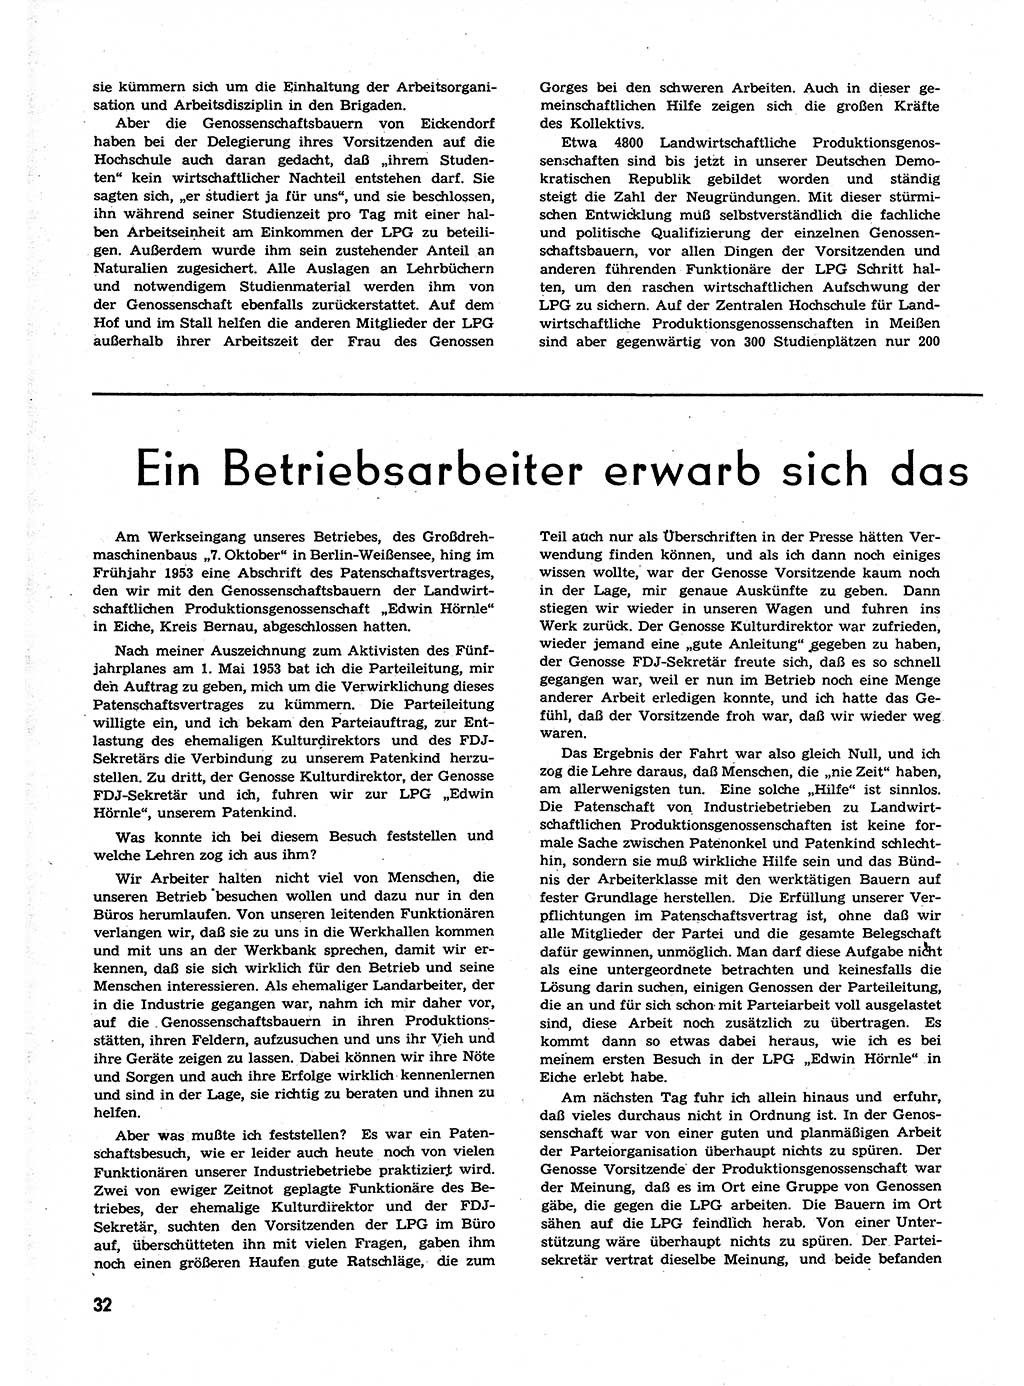 Neuer Weg (NW), Organ des Zentralkomitees (ZK) der SED (Sozialistische Einheitspartei Deutschlands) für alle Parteiarbeiter, 9. Jahrgang [Deutsche Demokratische Republik (DDR)] 1954, Heft 1/32 (NW ZK SED DDR 1954, H. 1/32)